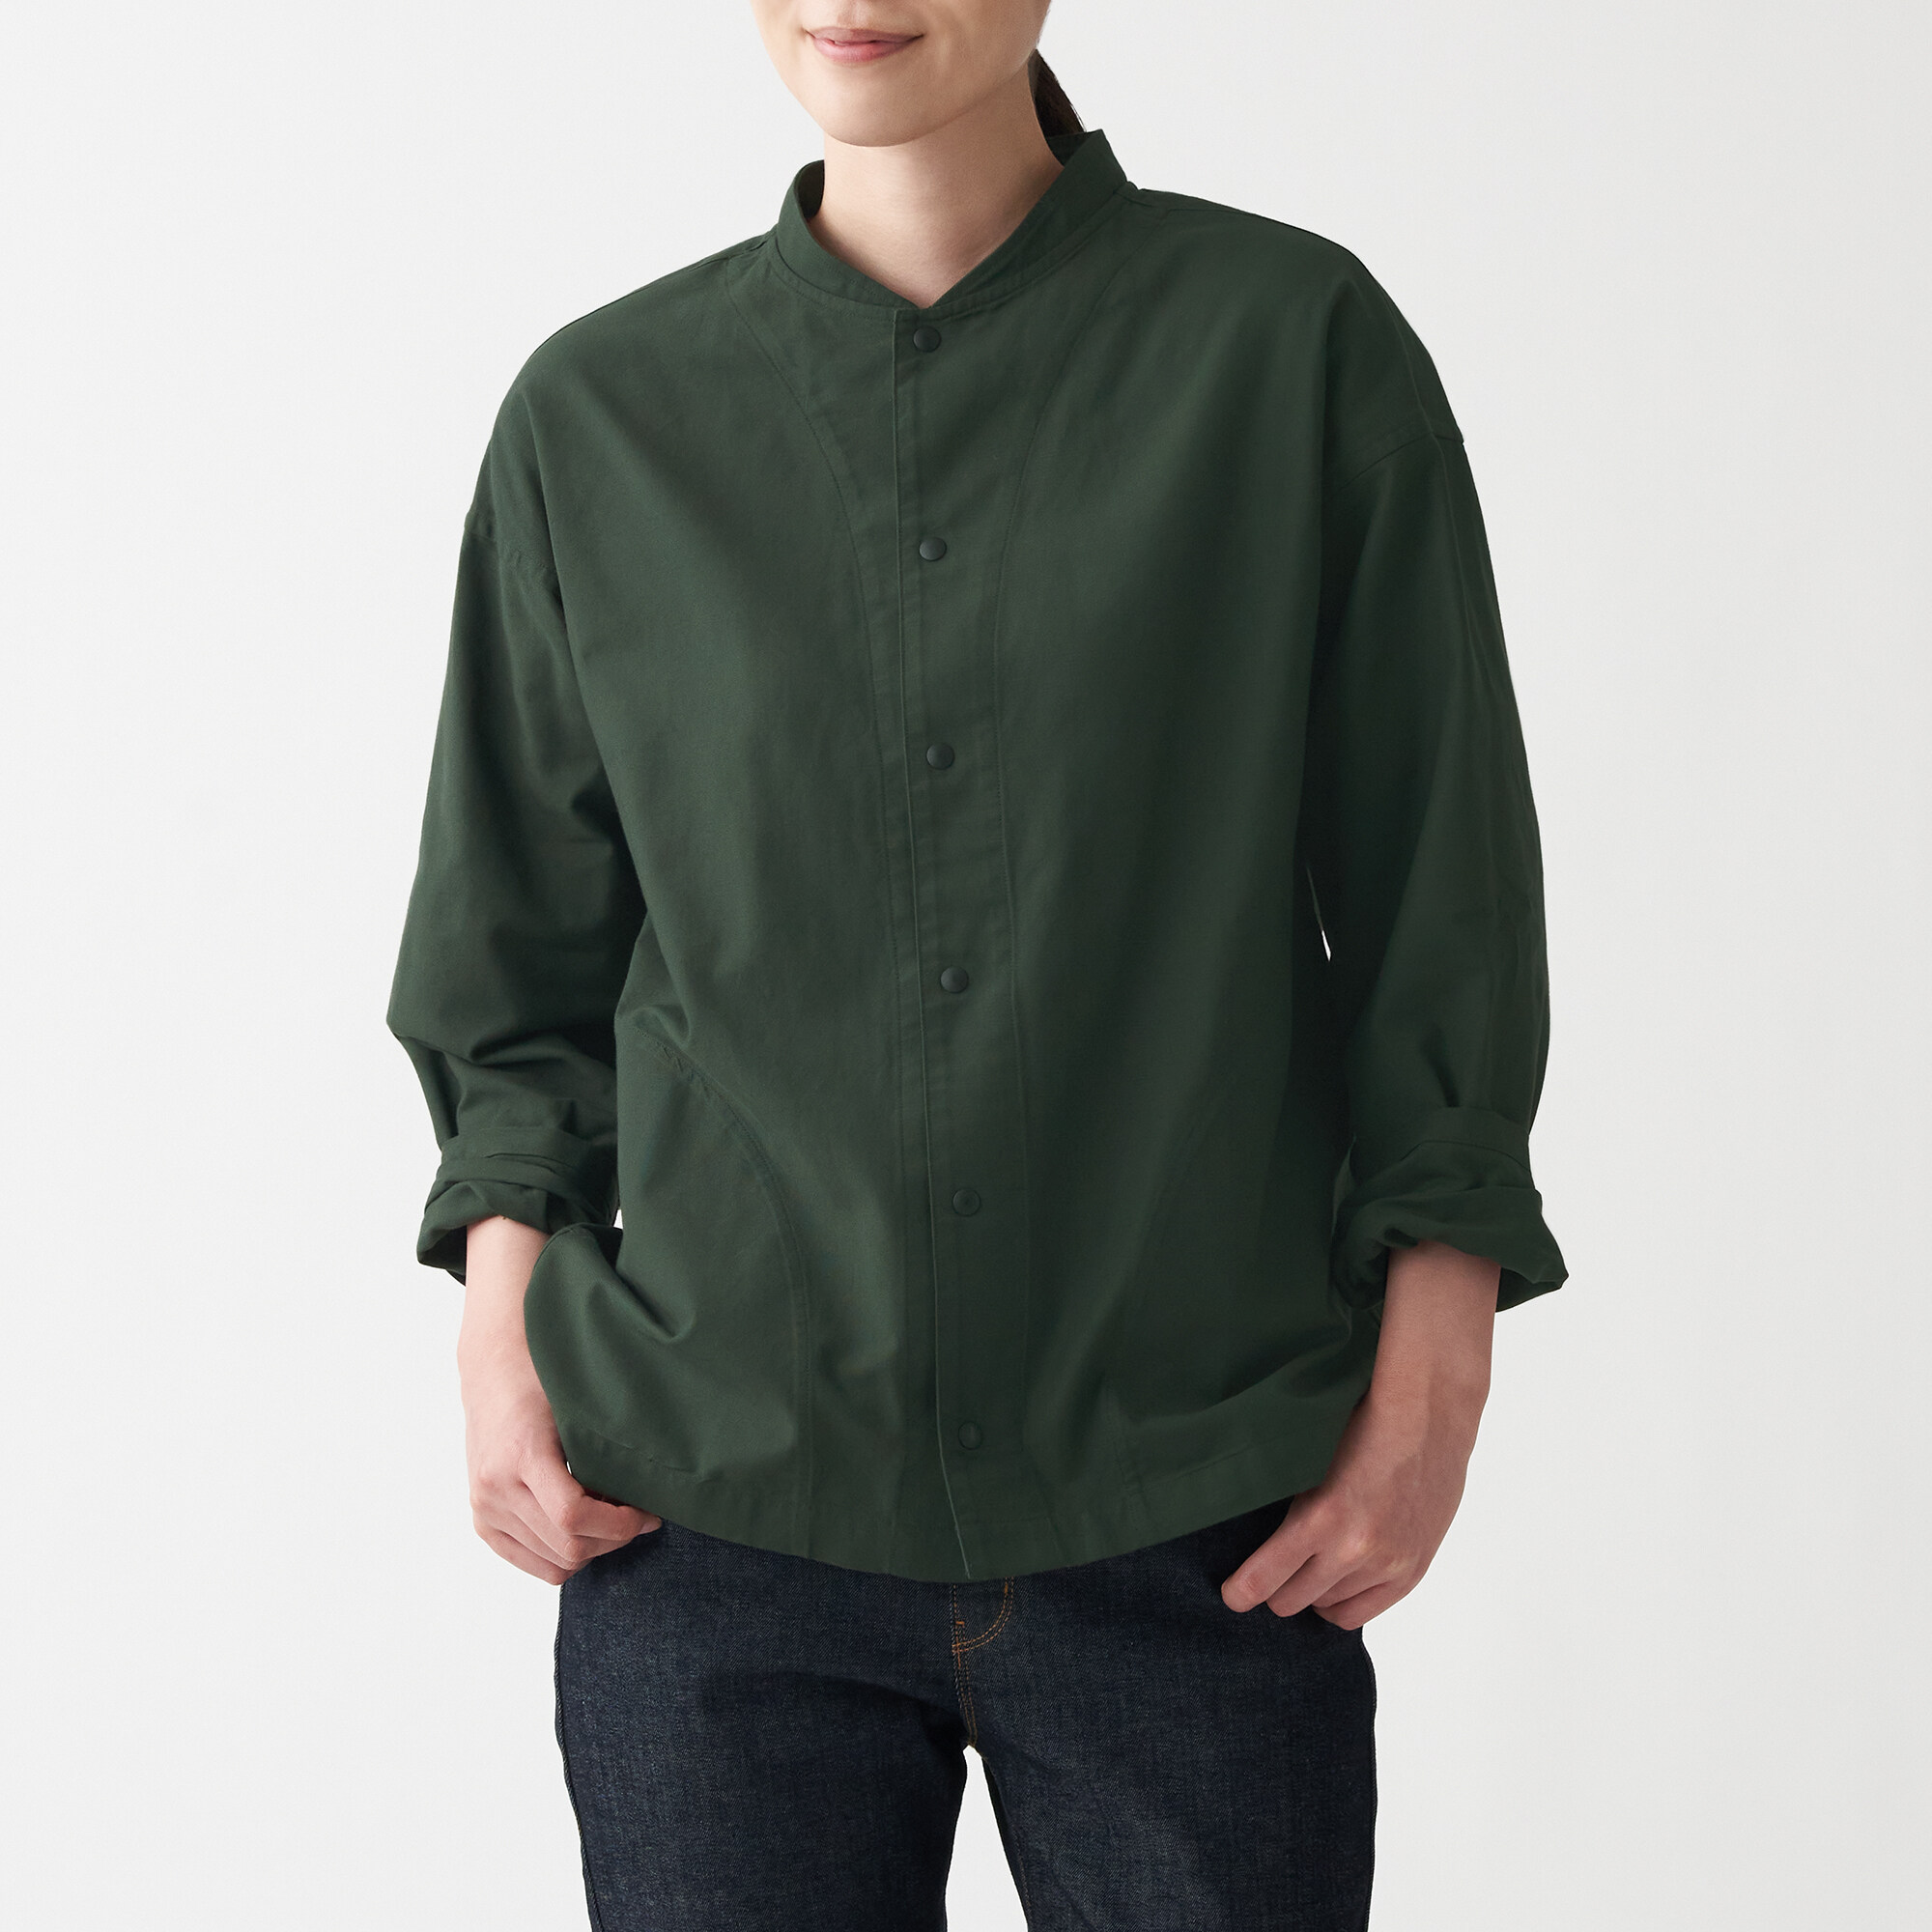 มูจิ เสื้อเชิ้ตผ้าออกซฟอร์ตฟอก ปกตั้ง Unisex - MUJI Washed Oxford Stand Collar Shirt สี เขียวเข้ม ขนาด L|XL